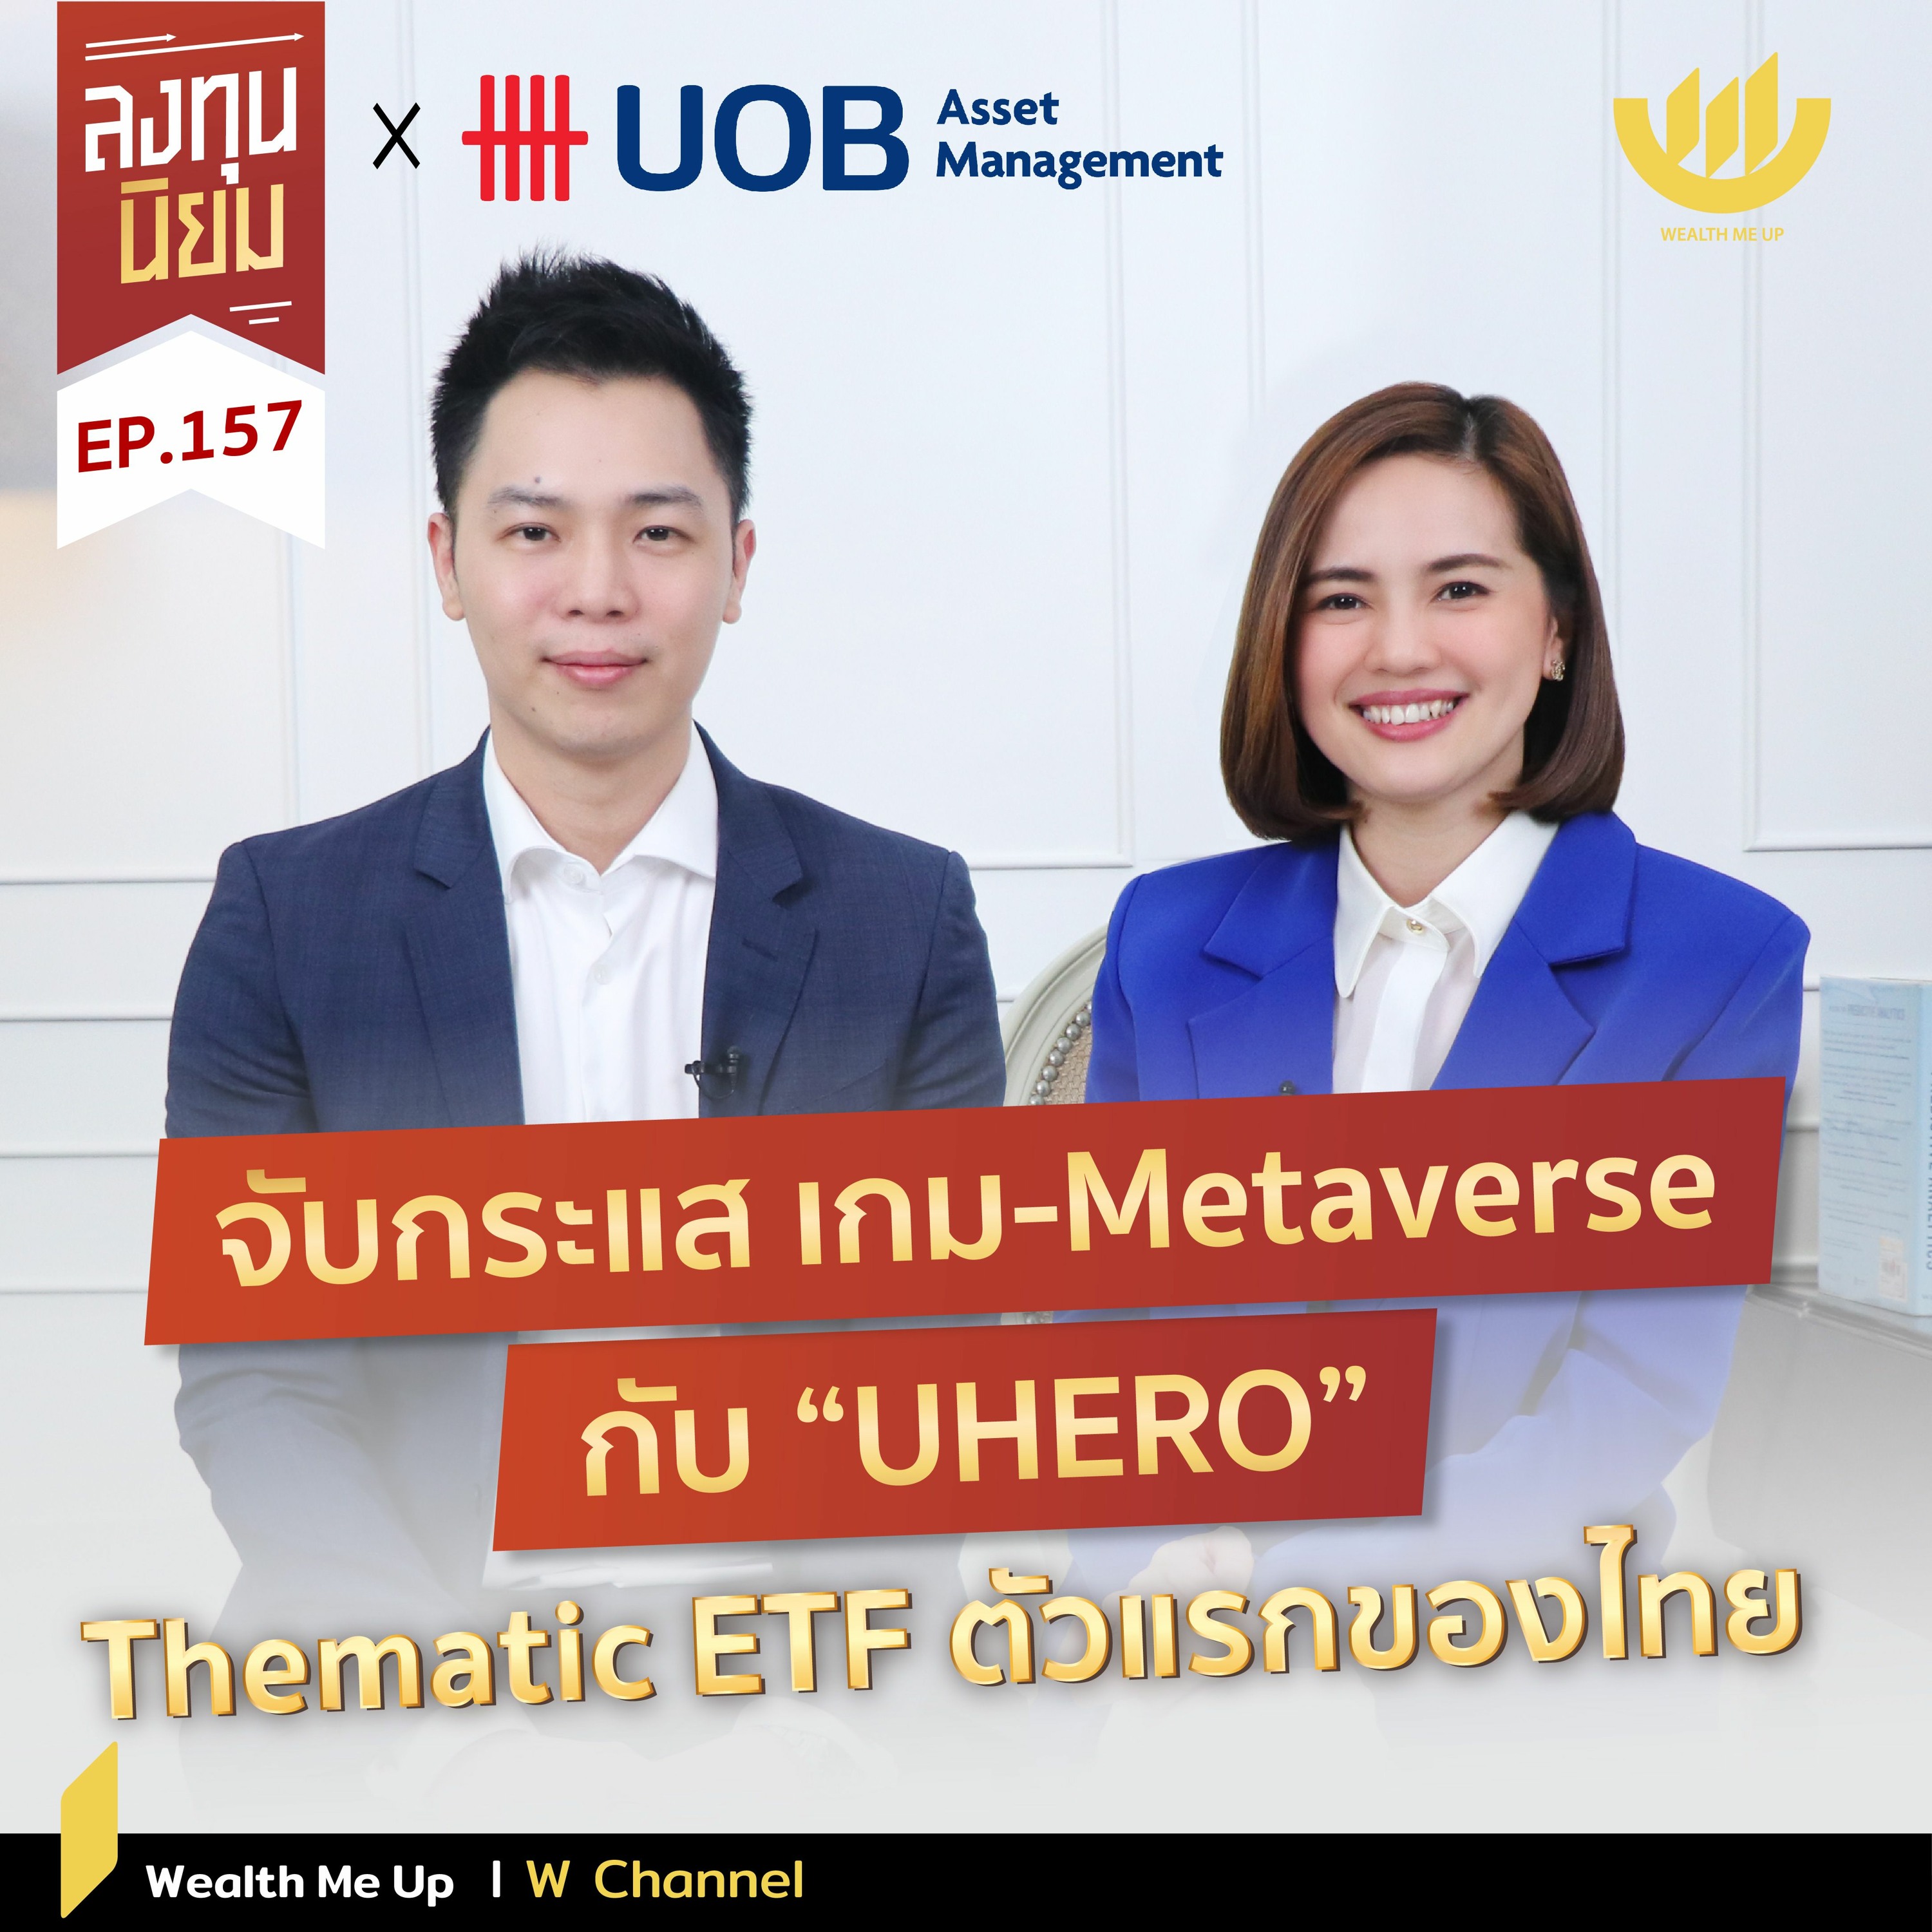 จับกระแส เกม-Metaverse กับ "UHERO" Thematic ETF ตัวแรกของไทย | ลงทุนนิยม EP.157